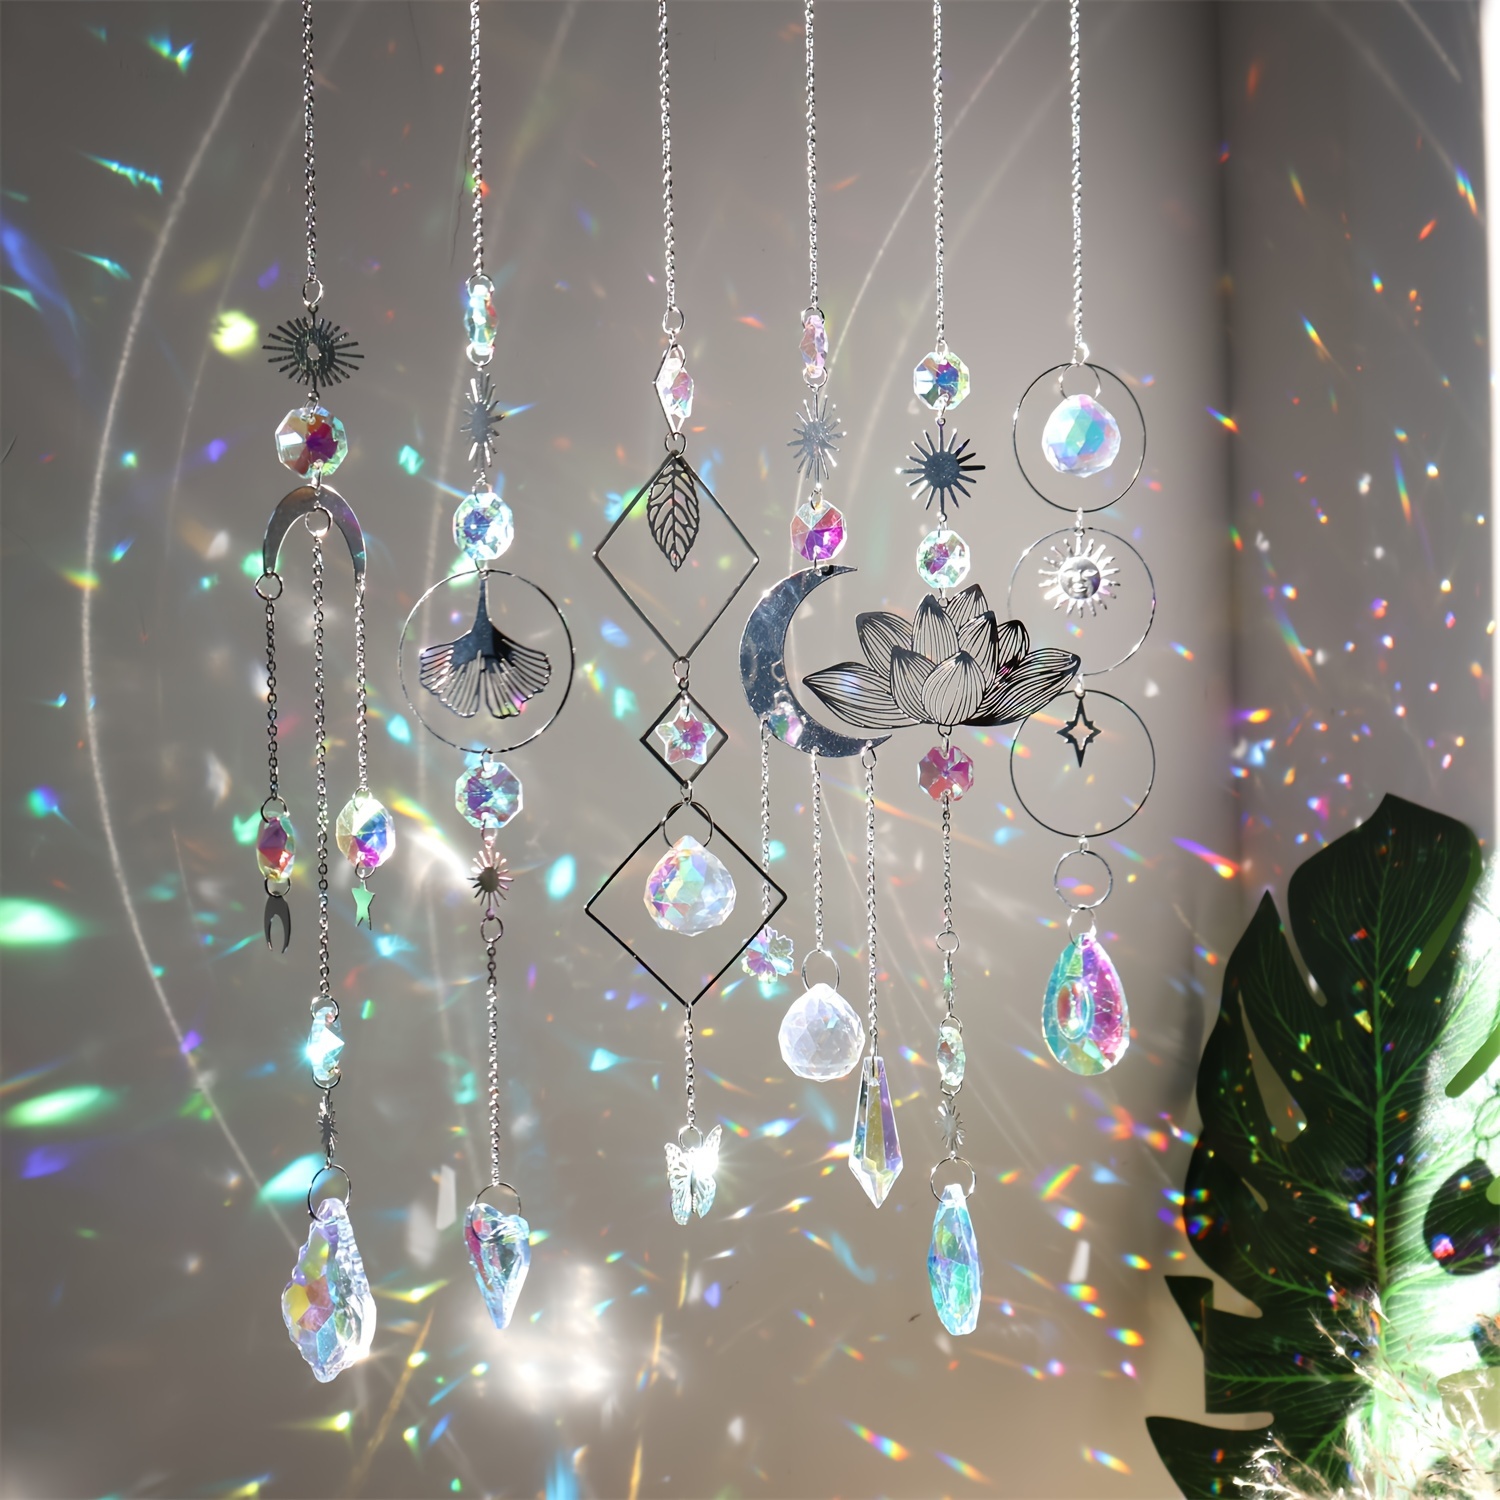 Boule de cristal à facettes 40 mm suncatcher feng shui transparente,  attrape soleil, prisme, arc en ciel, mobile, décoration, lumière -   France